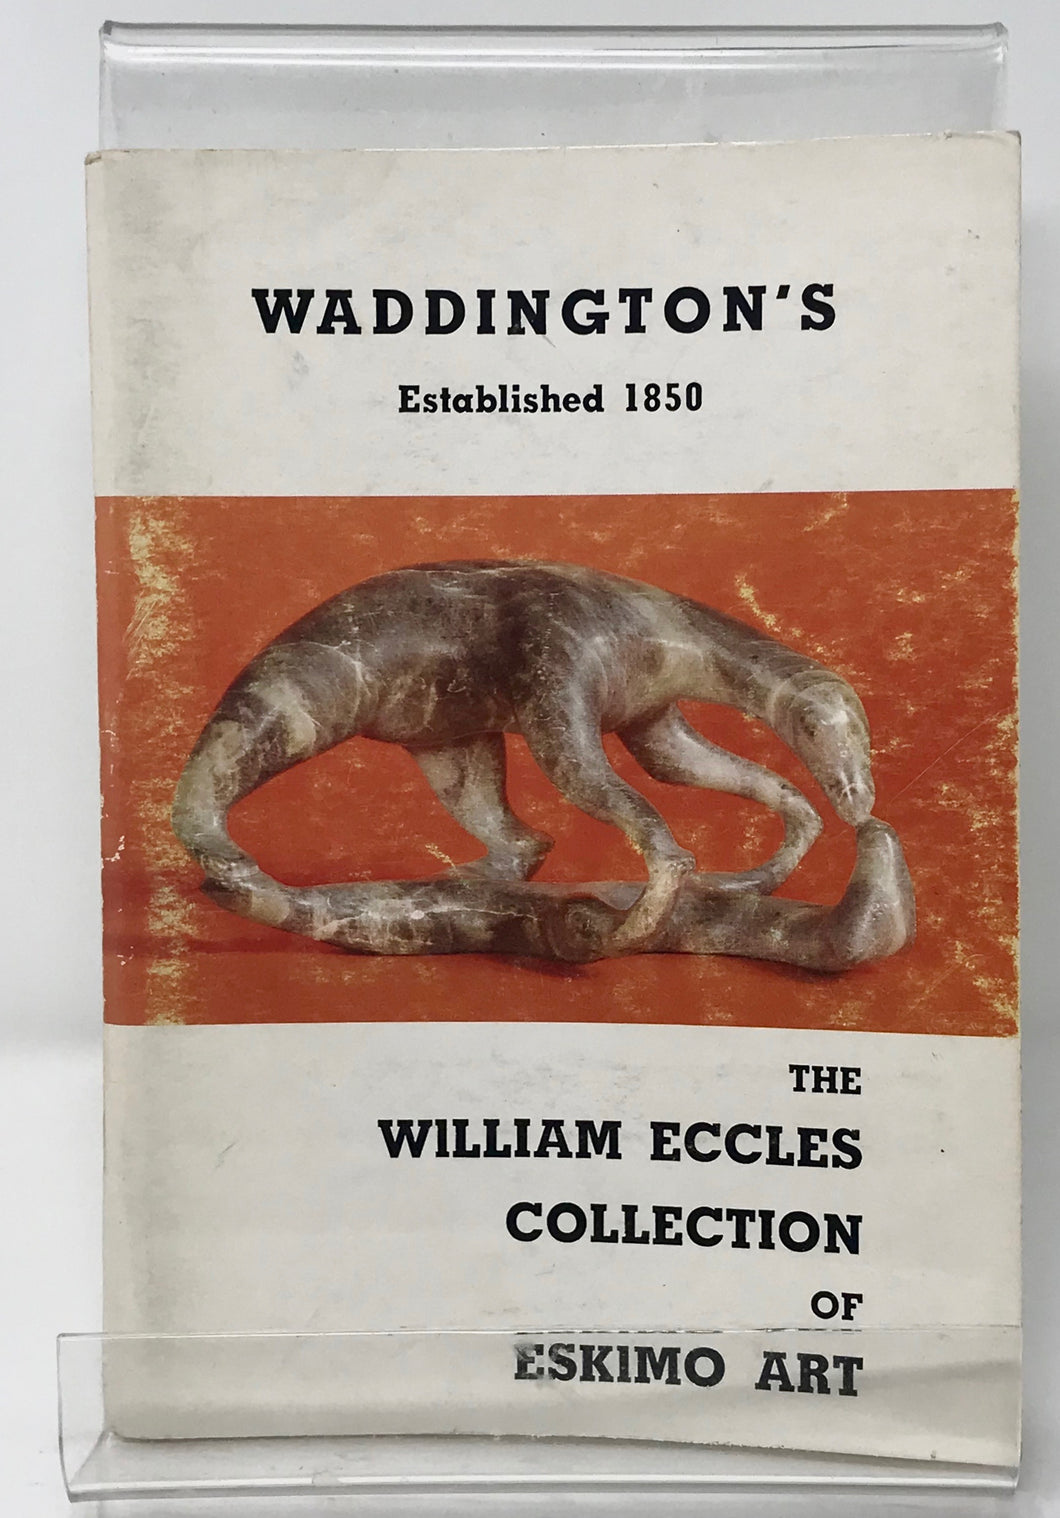 WADDINGTON' S AUCTION CATALOGUE  WILLIAM ECCLES COLLECTION